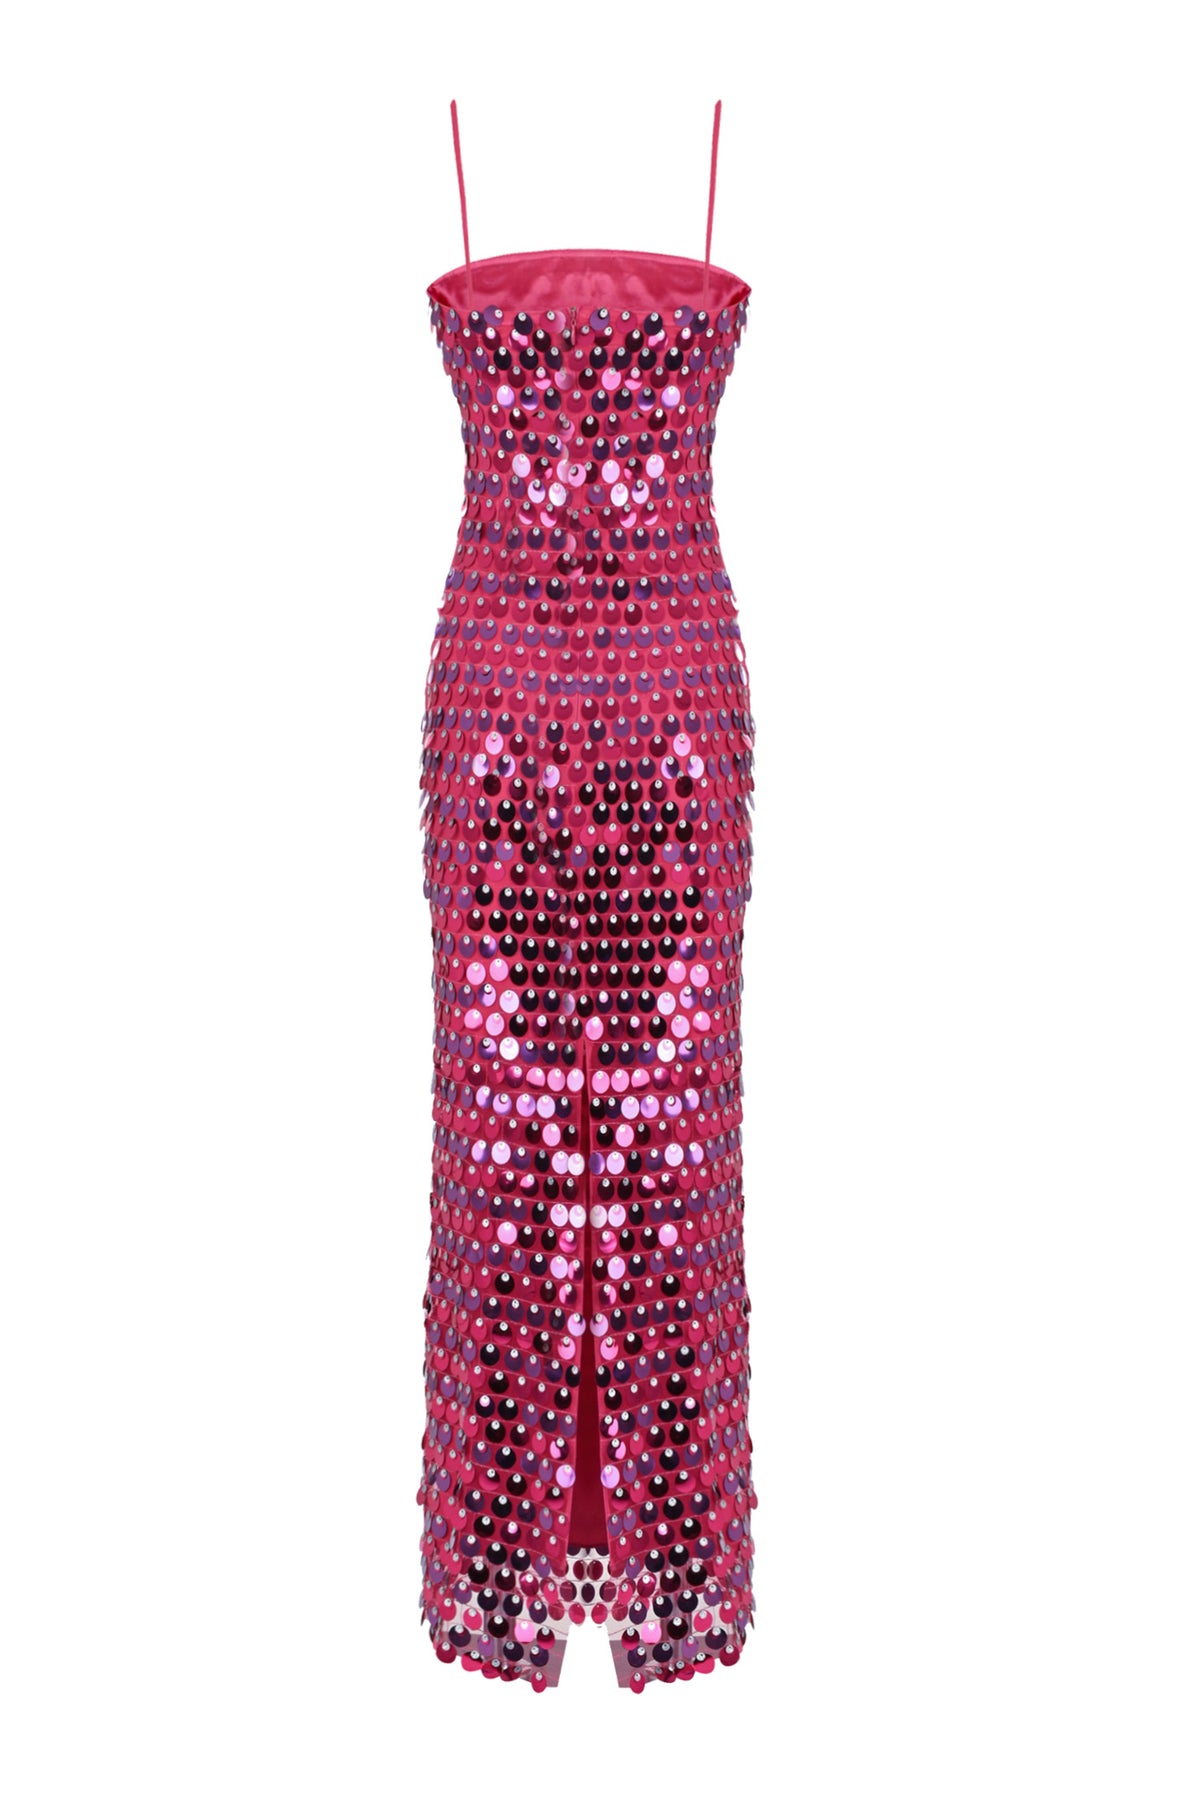 Phoenix Dress in Dark Pink Sequins – Couper